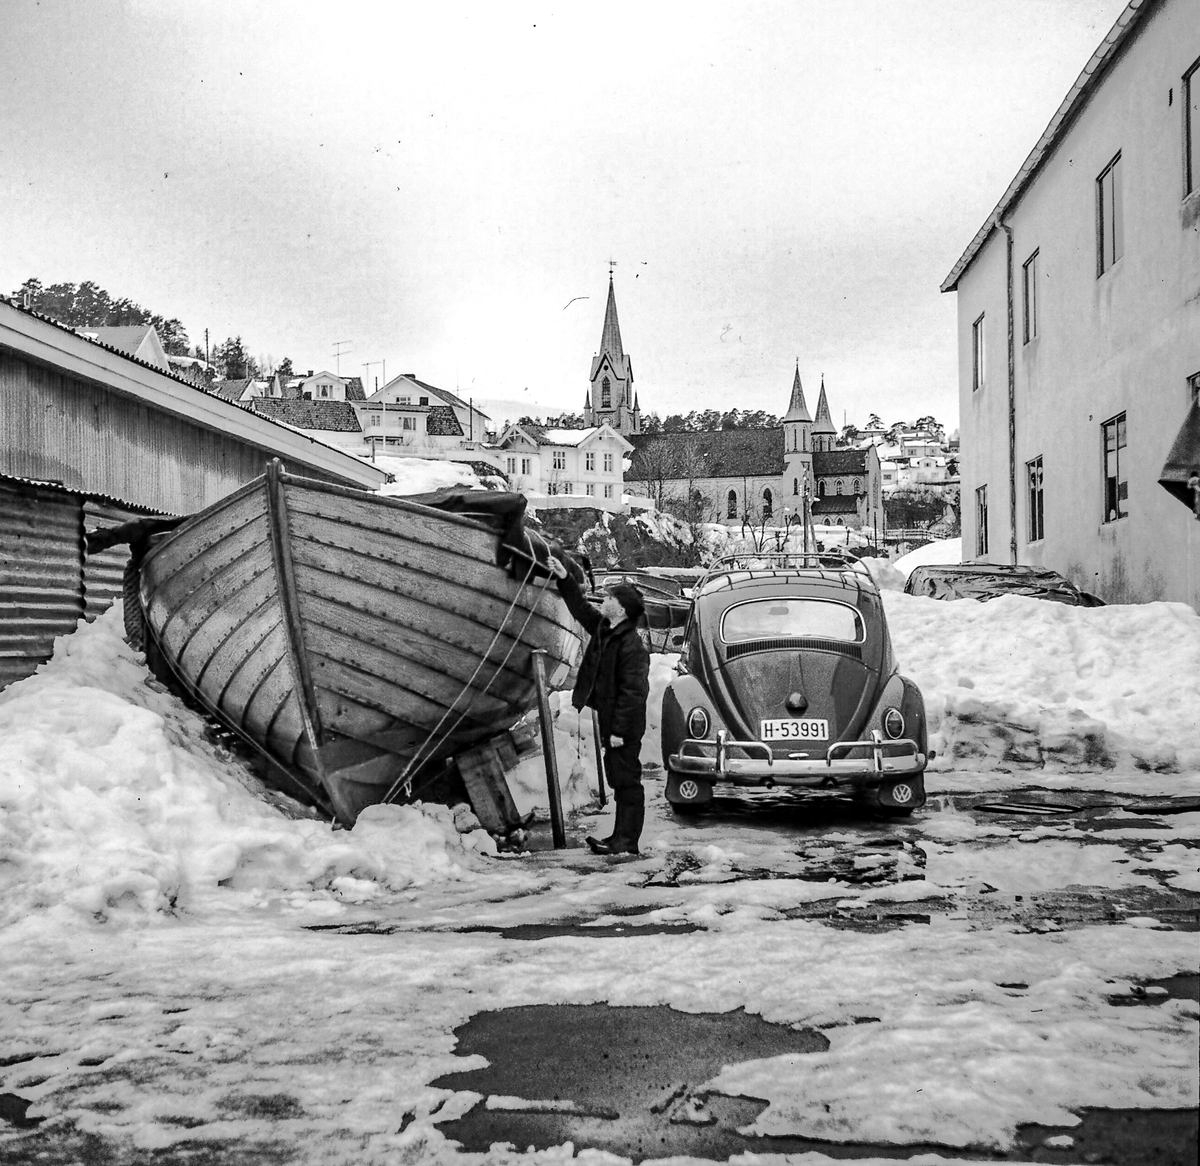 Mann sjekker koggen i vinterlagring ved felleskjøpet. 1960-70. Kragerø kirke bak.